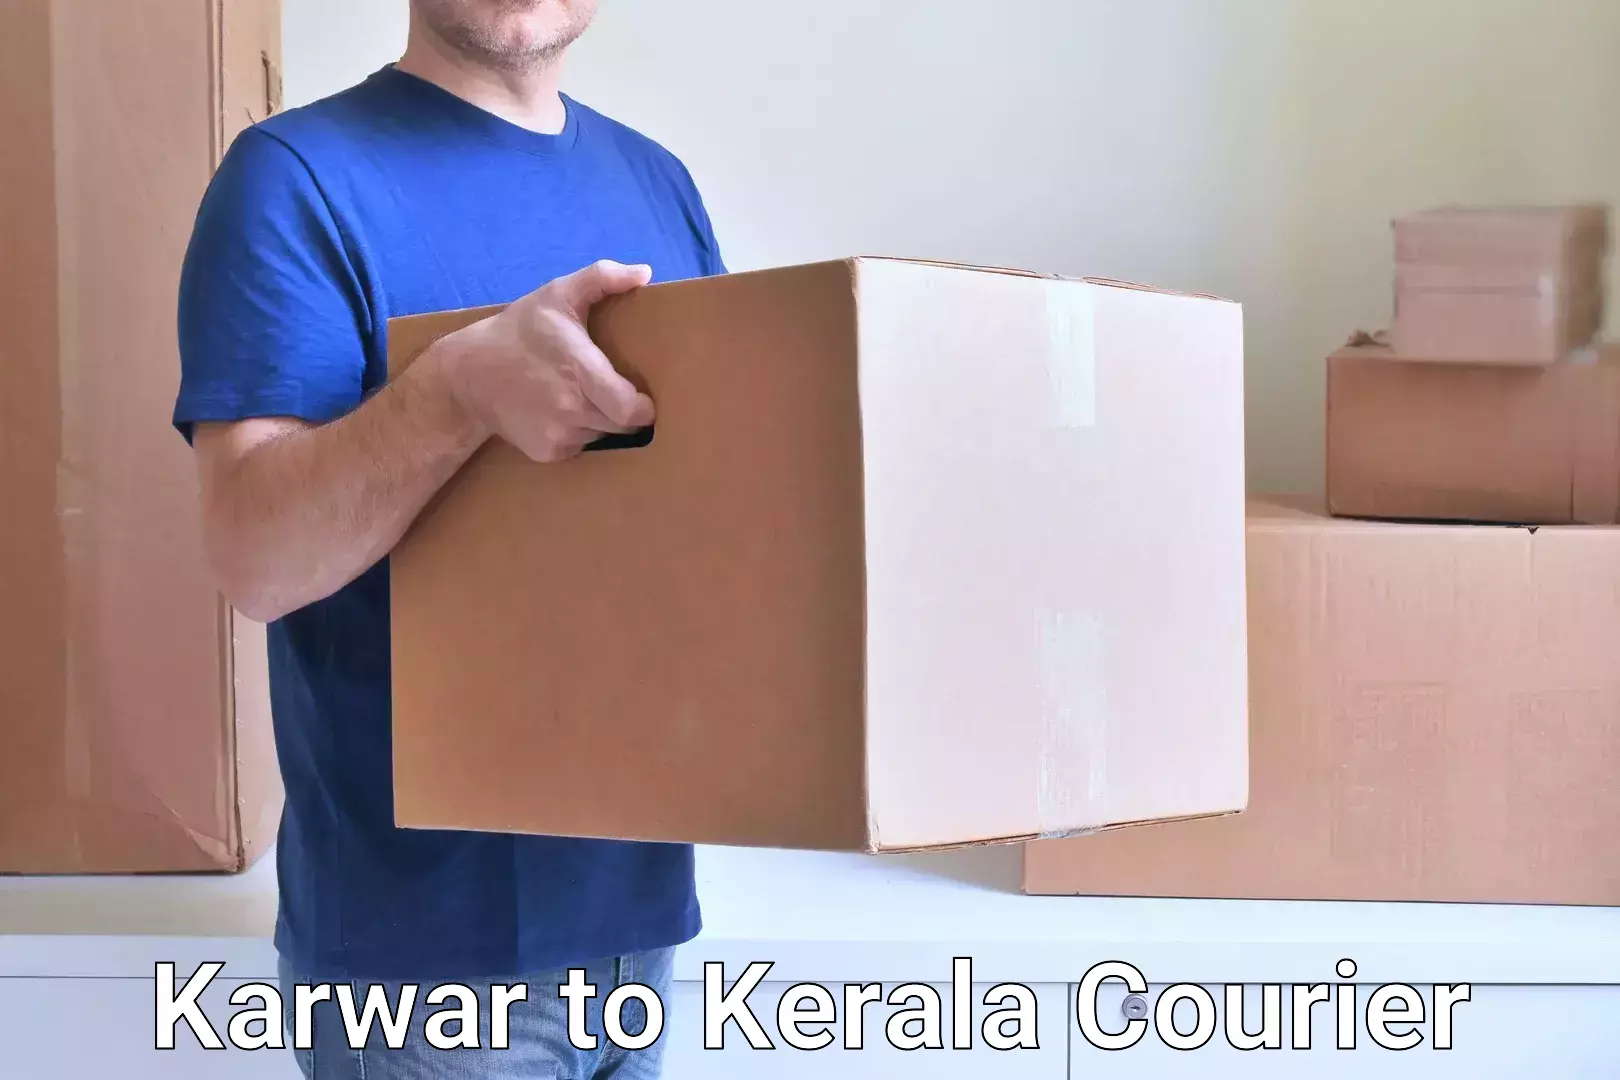 Personal parcel delivery in Karwar to Ernakulam